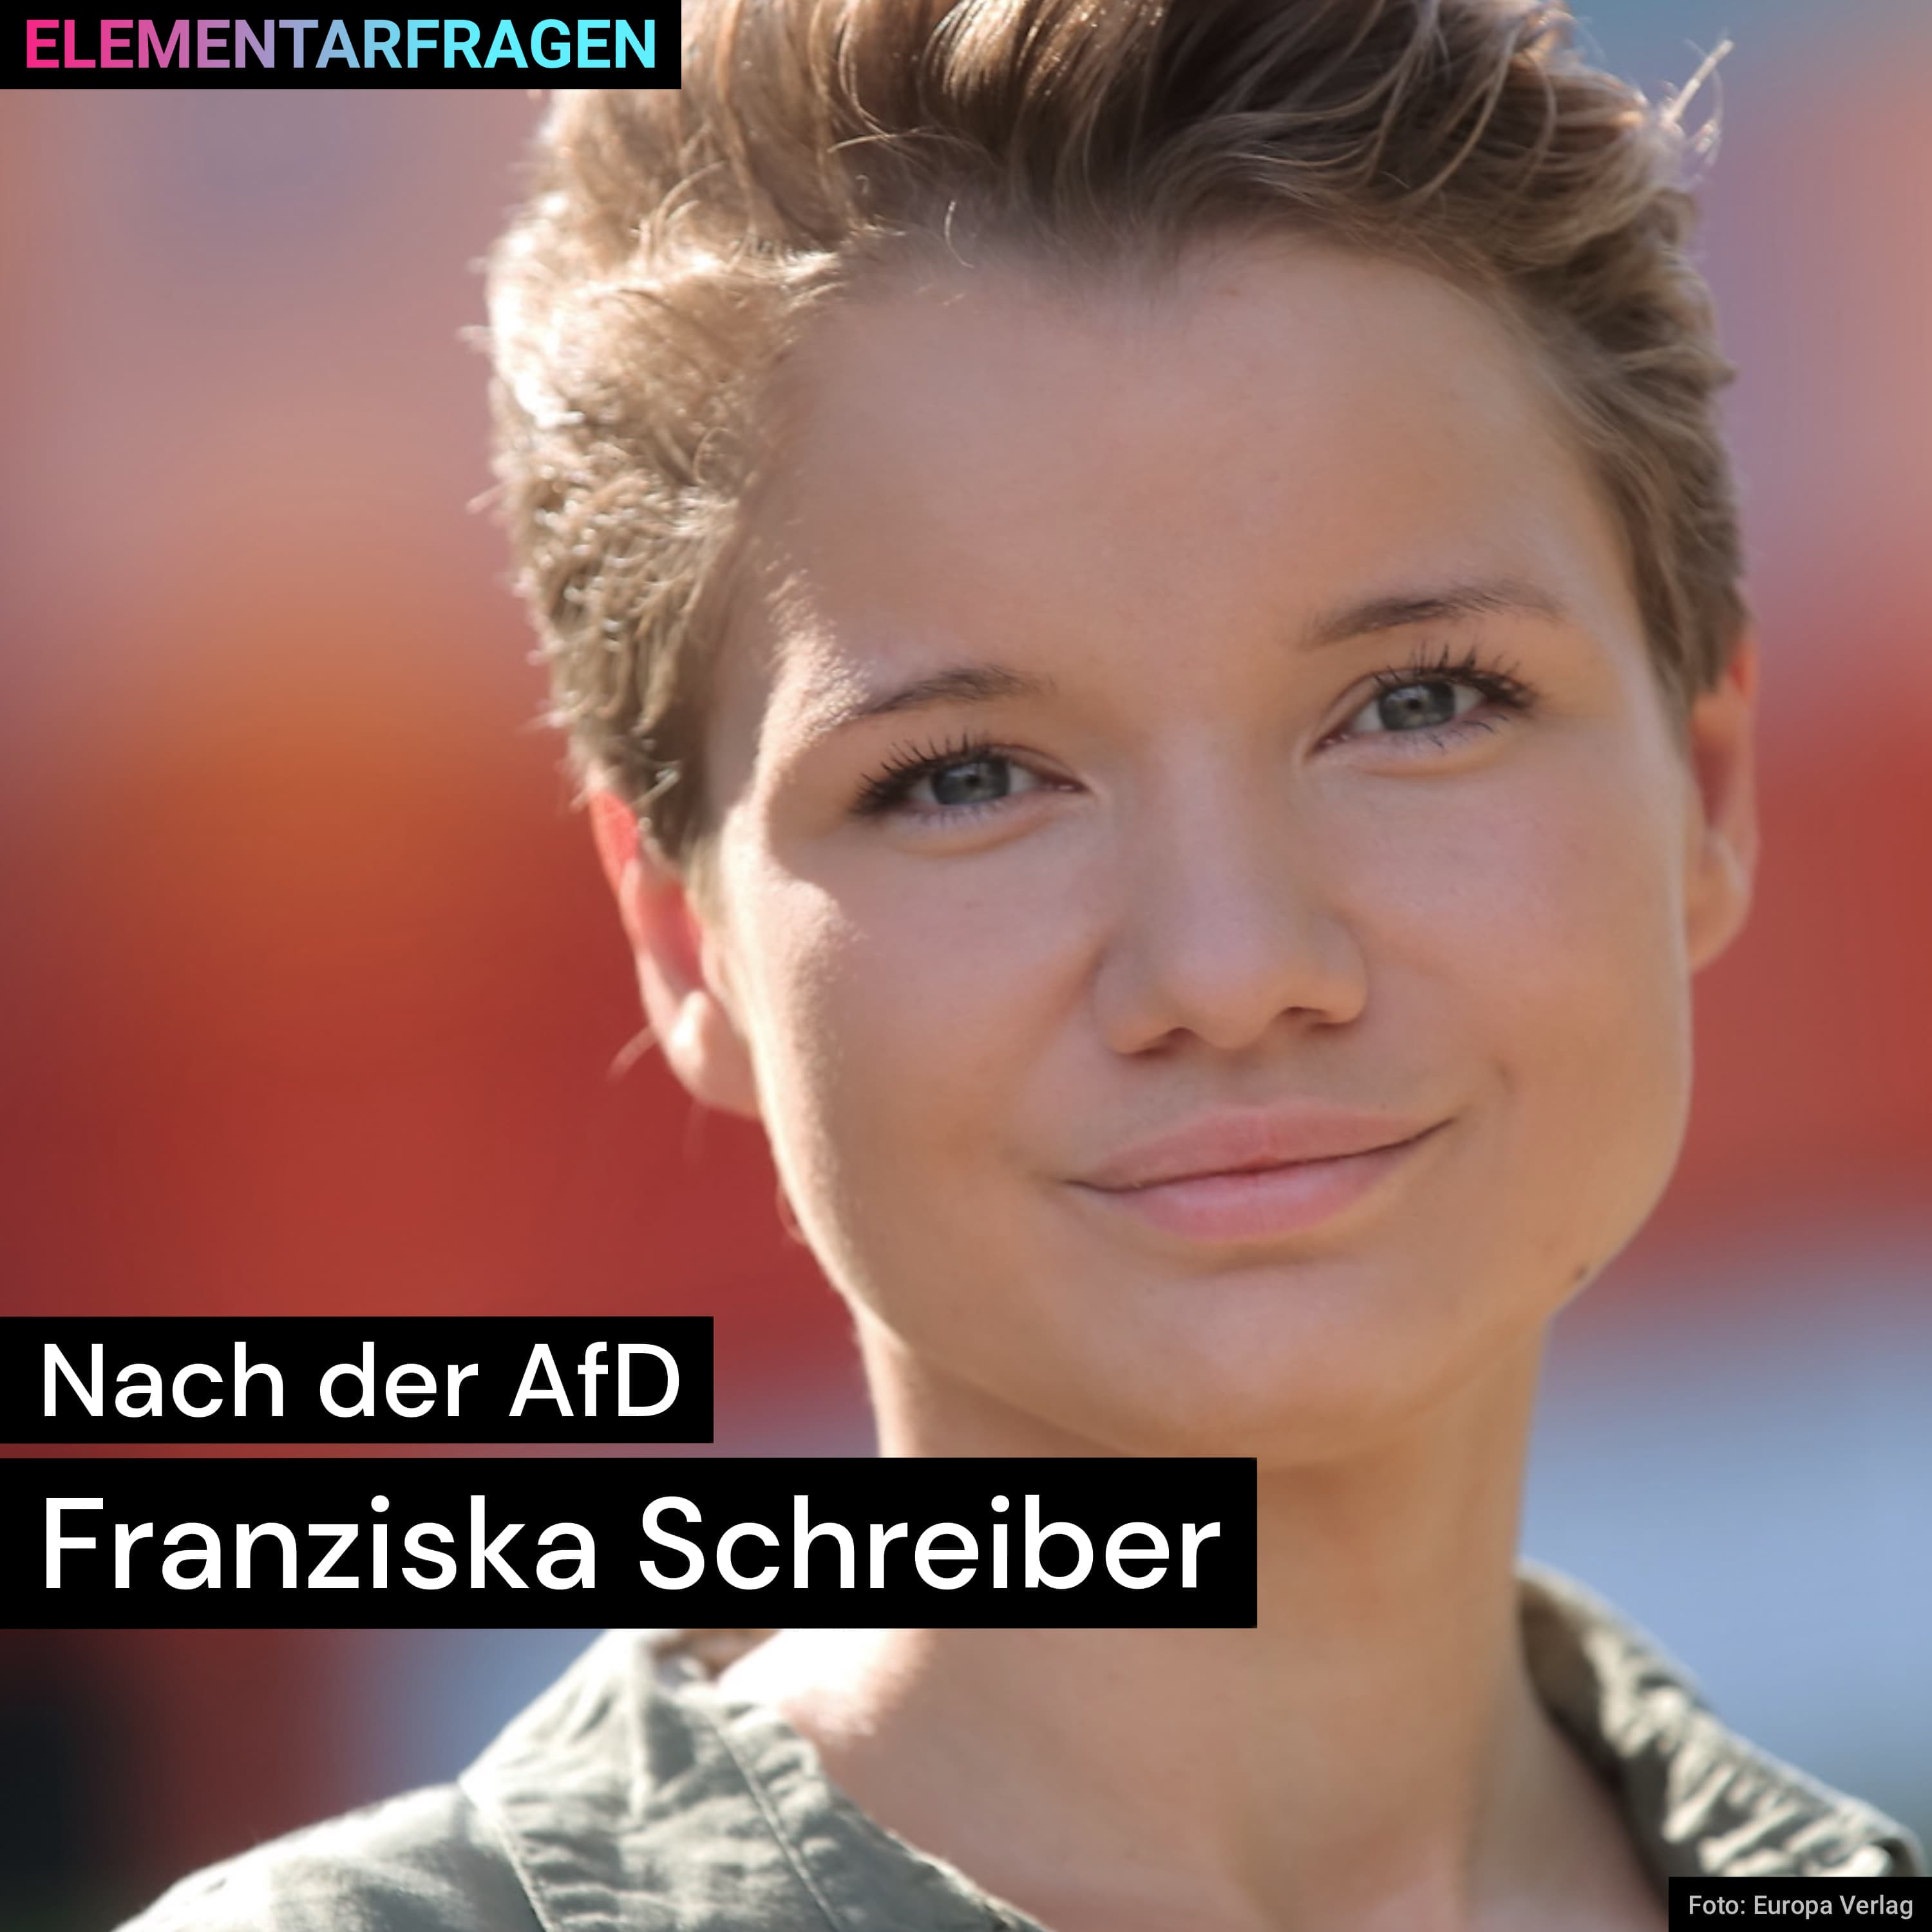 Nach der AfD | Franziska Schreiber